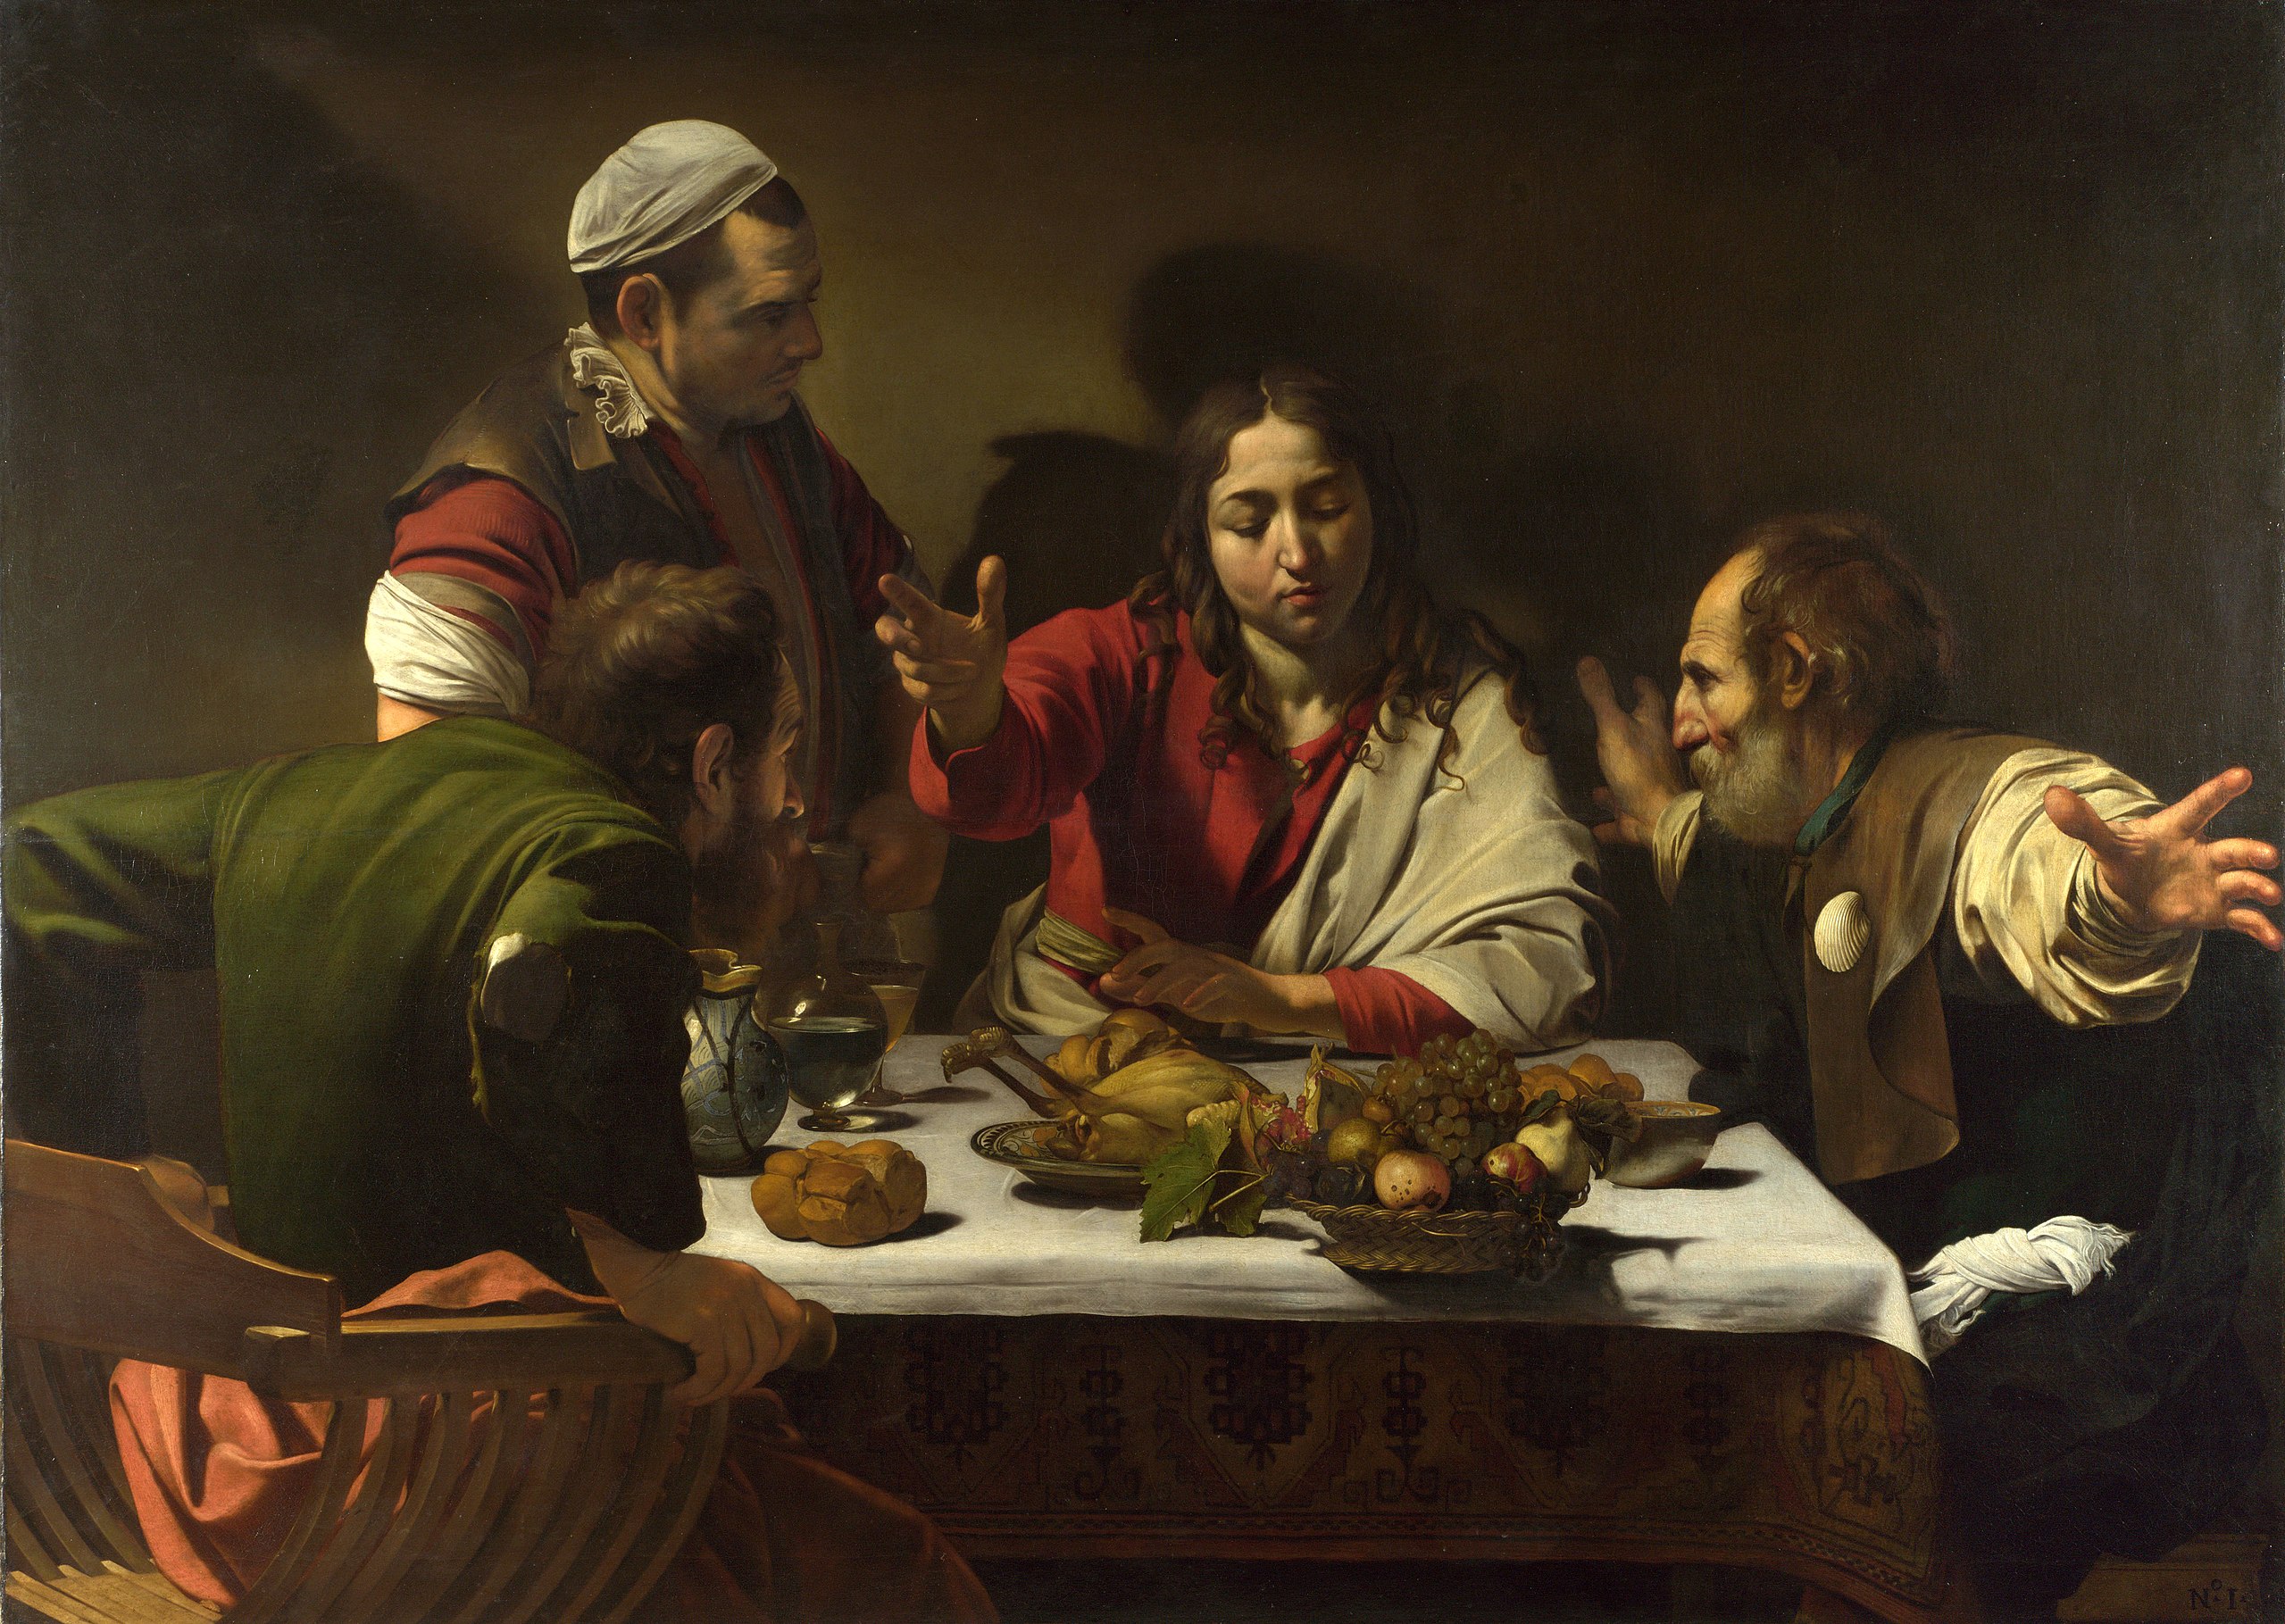 العشاء في عمواس by  Caravaggio - 1601 م - 141 × 196.2 سم 